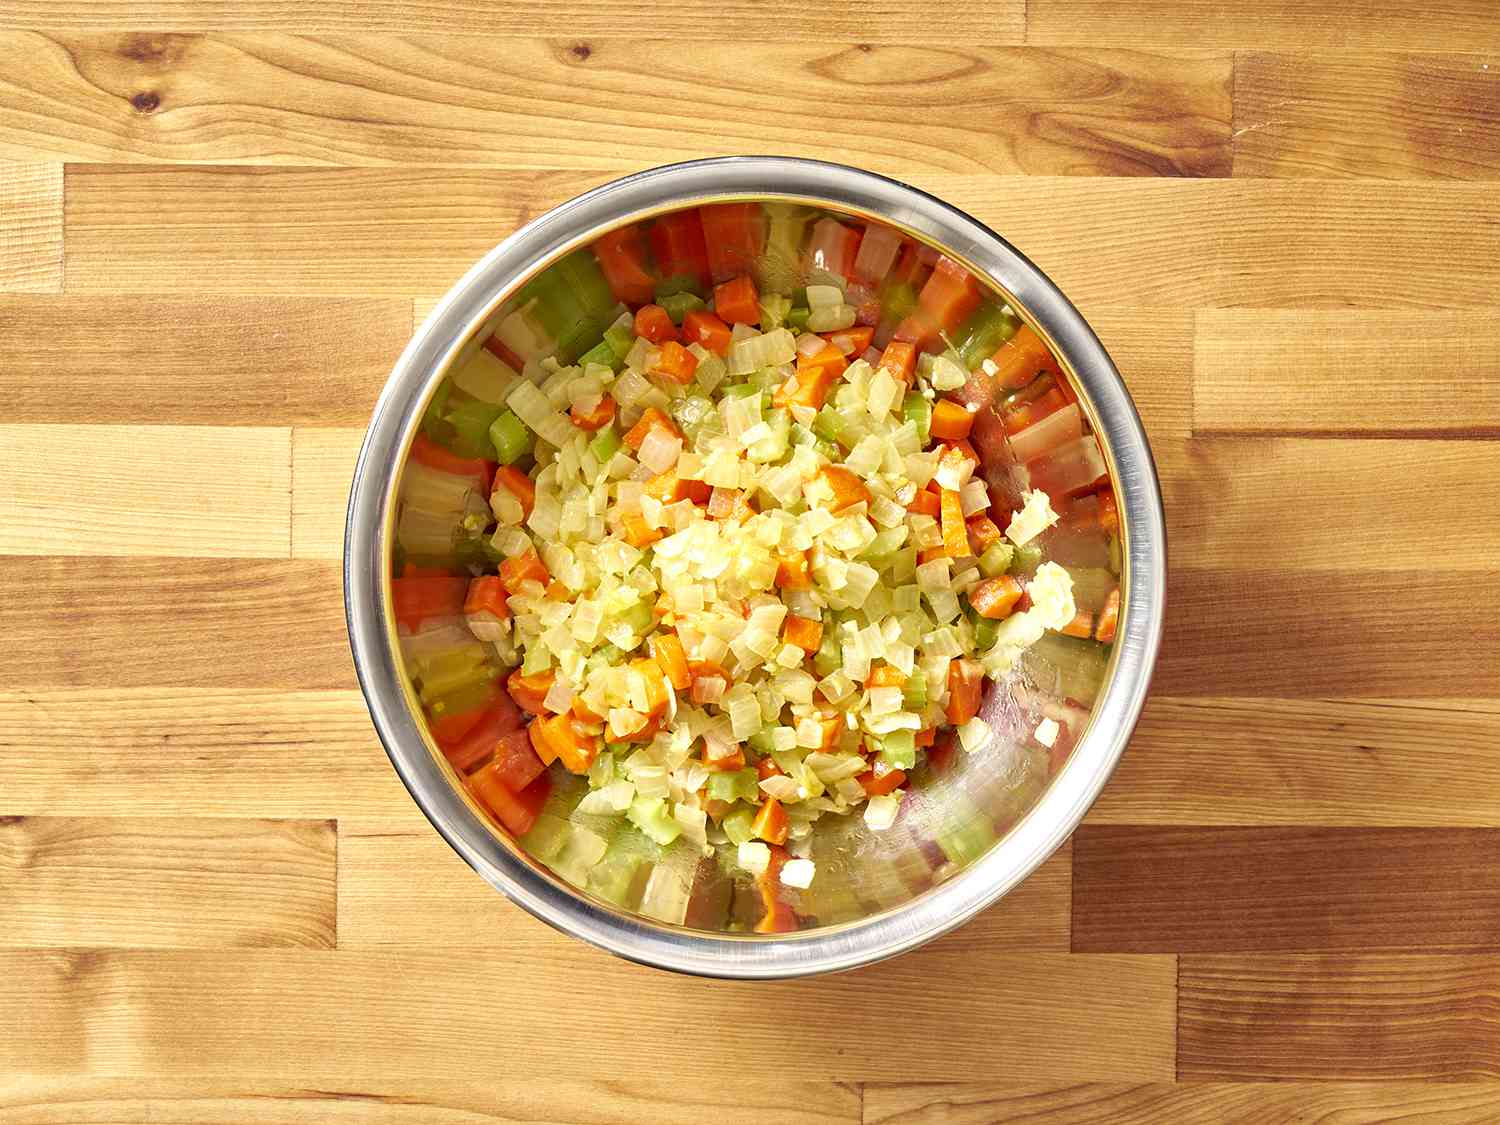 把煮熟的蔬菜切丁放在金属碗里。gydF4y2Ba